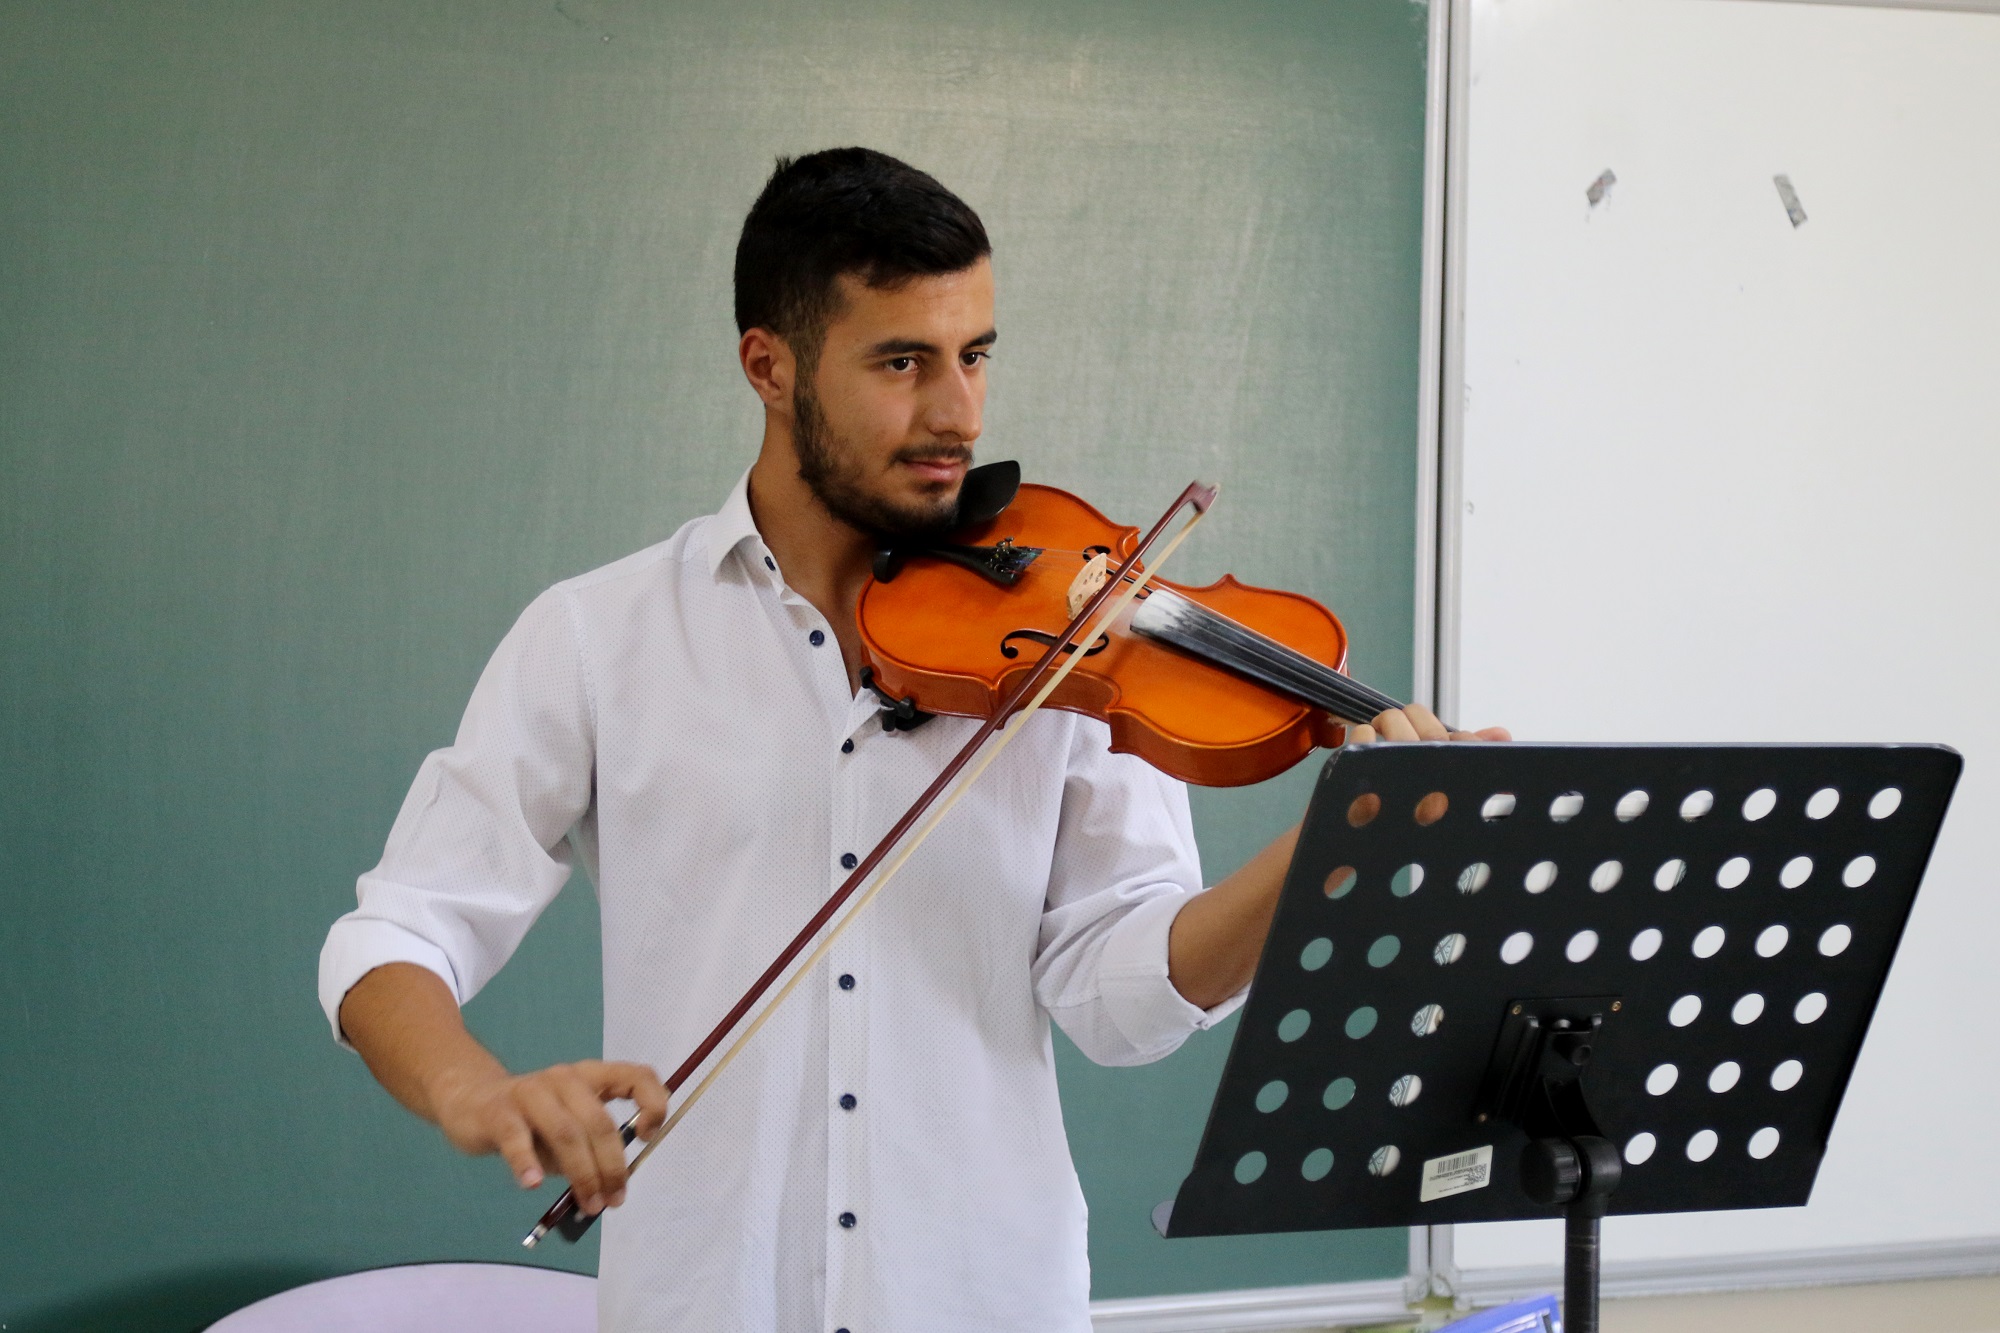 Ağrı İbrahim Çeçen Üniversitesi’nde Özel Yetenek Sınavı Tamamlandı